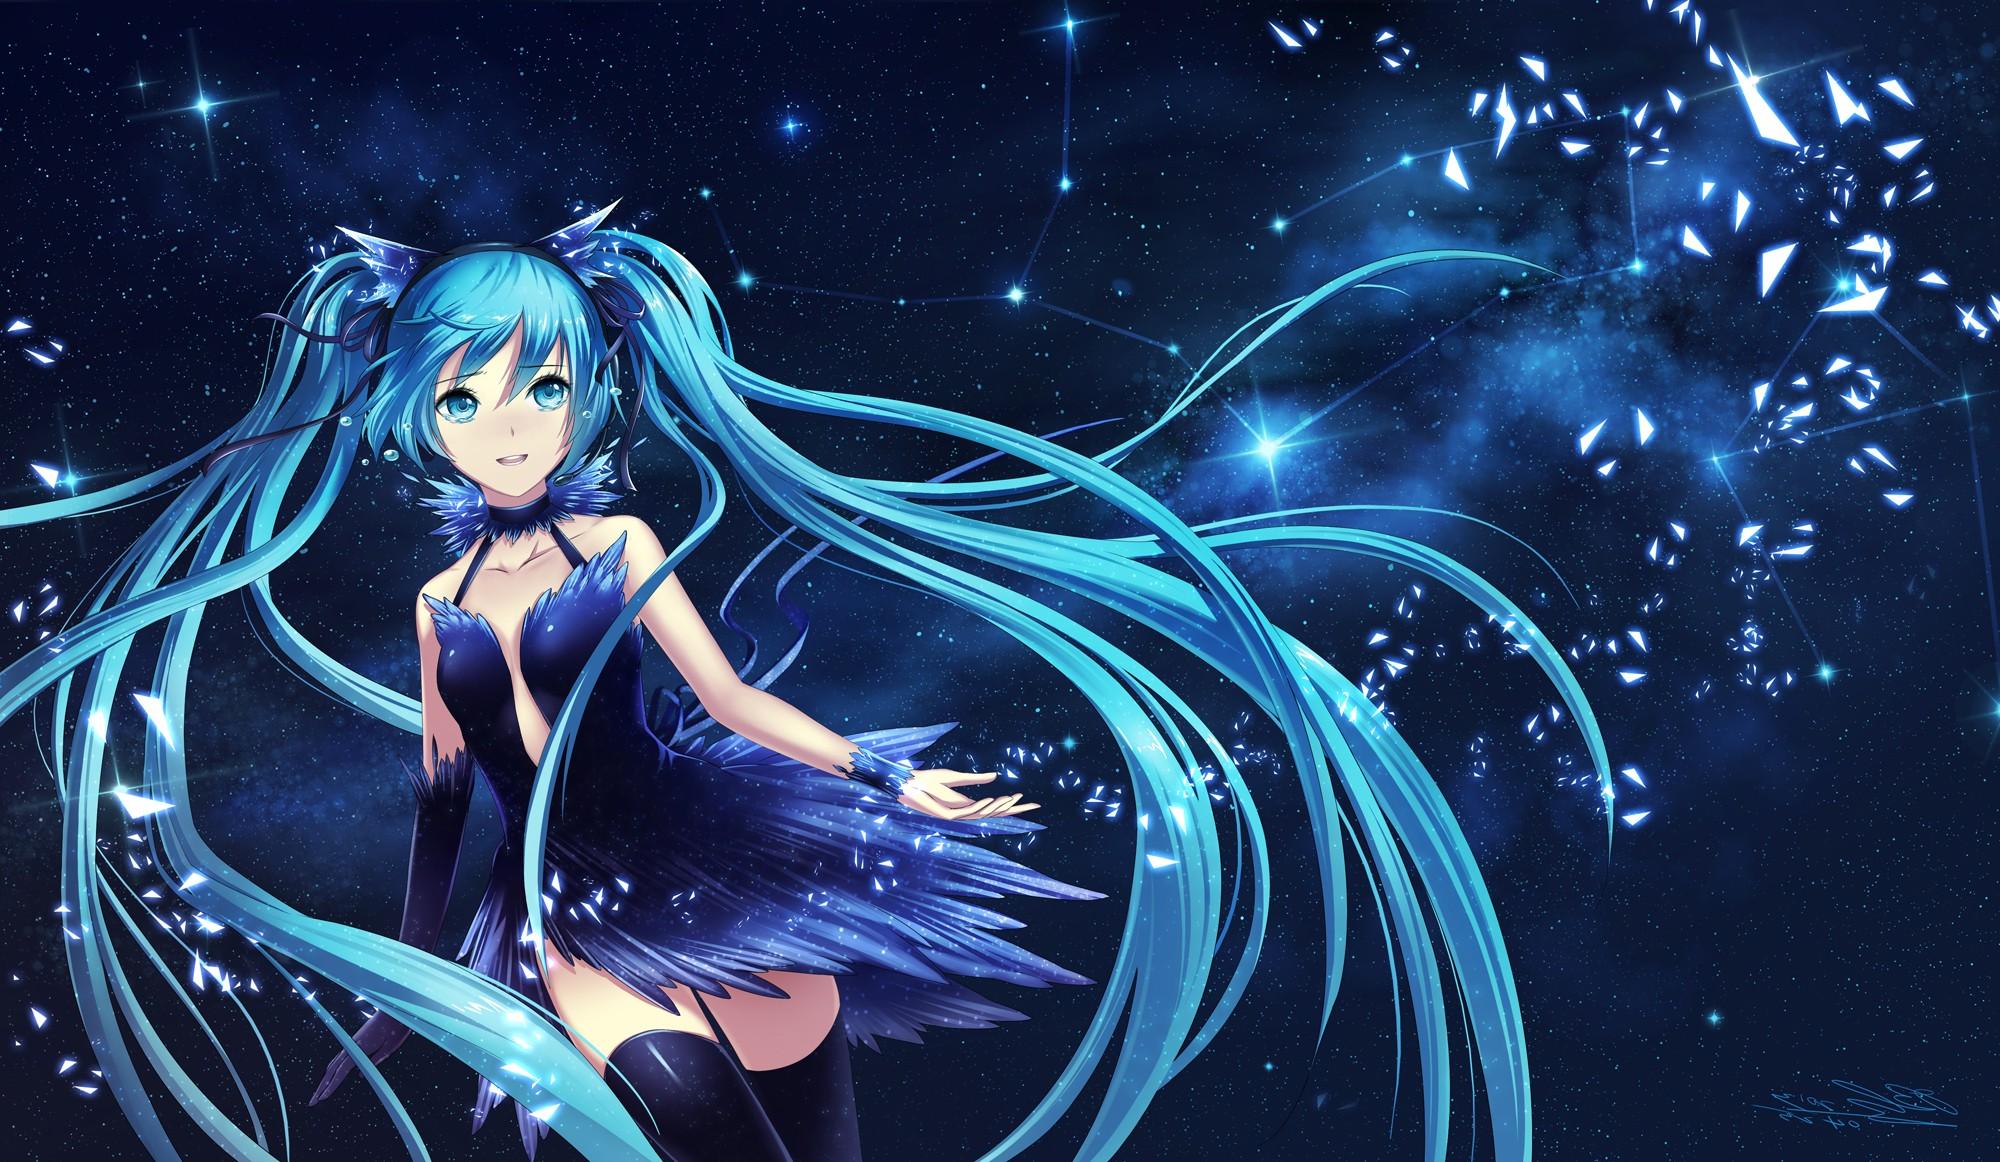 Anime Girls image 207517 Vocaloid Hatsune Miku blue dress long hair